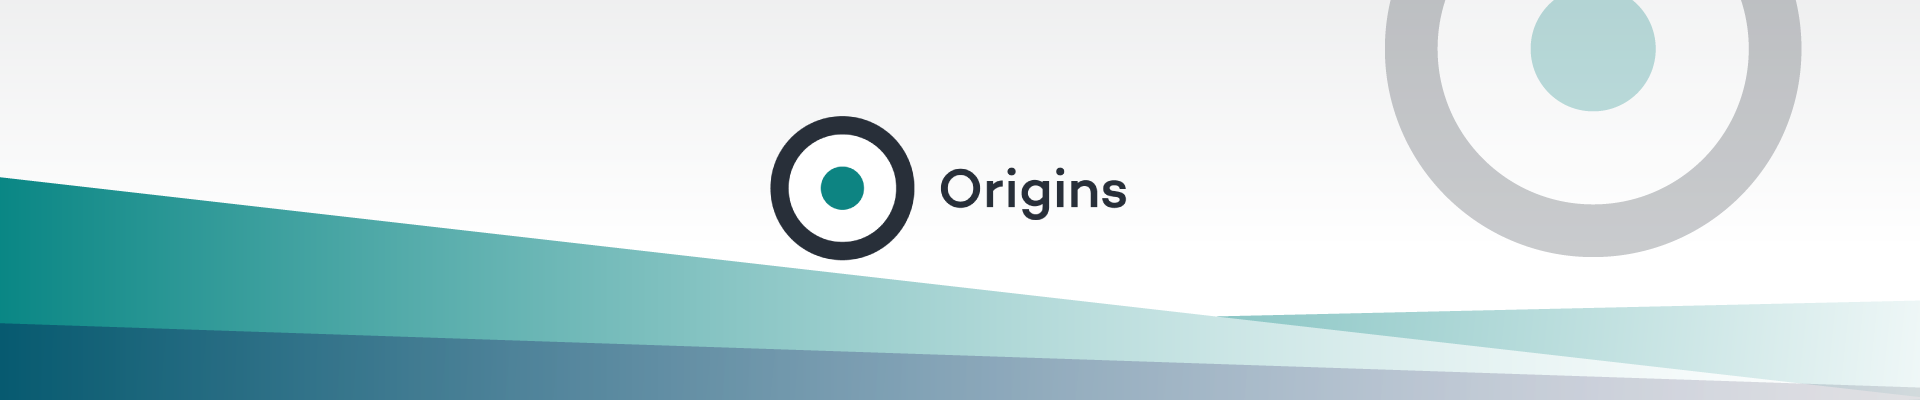 origins client